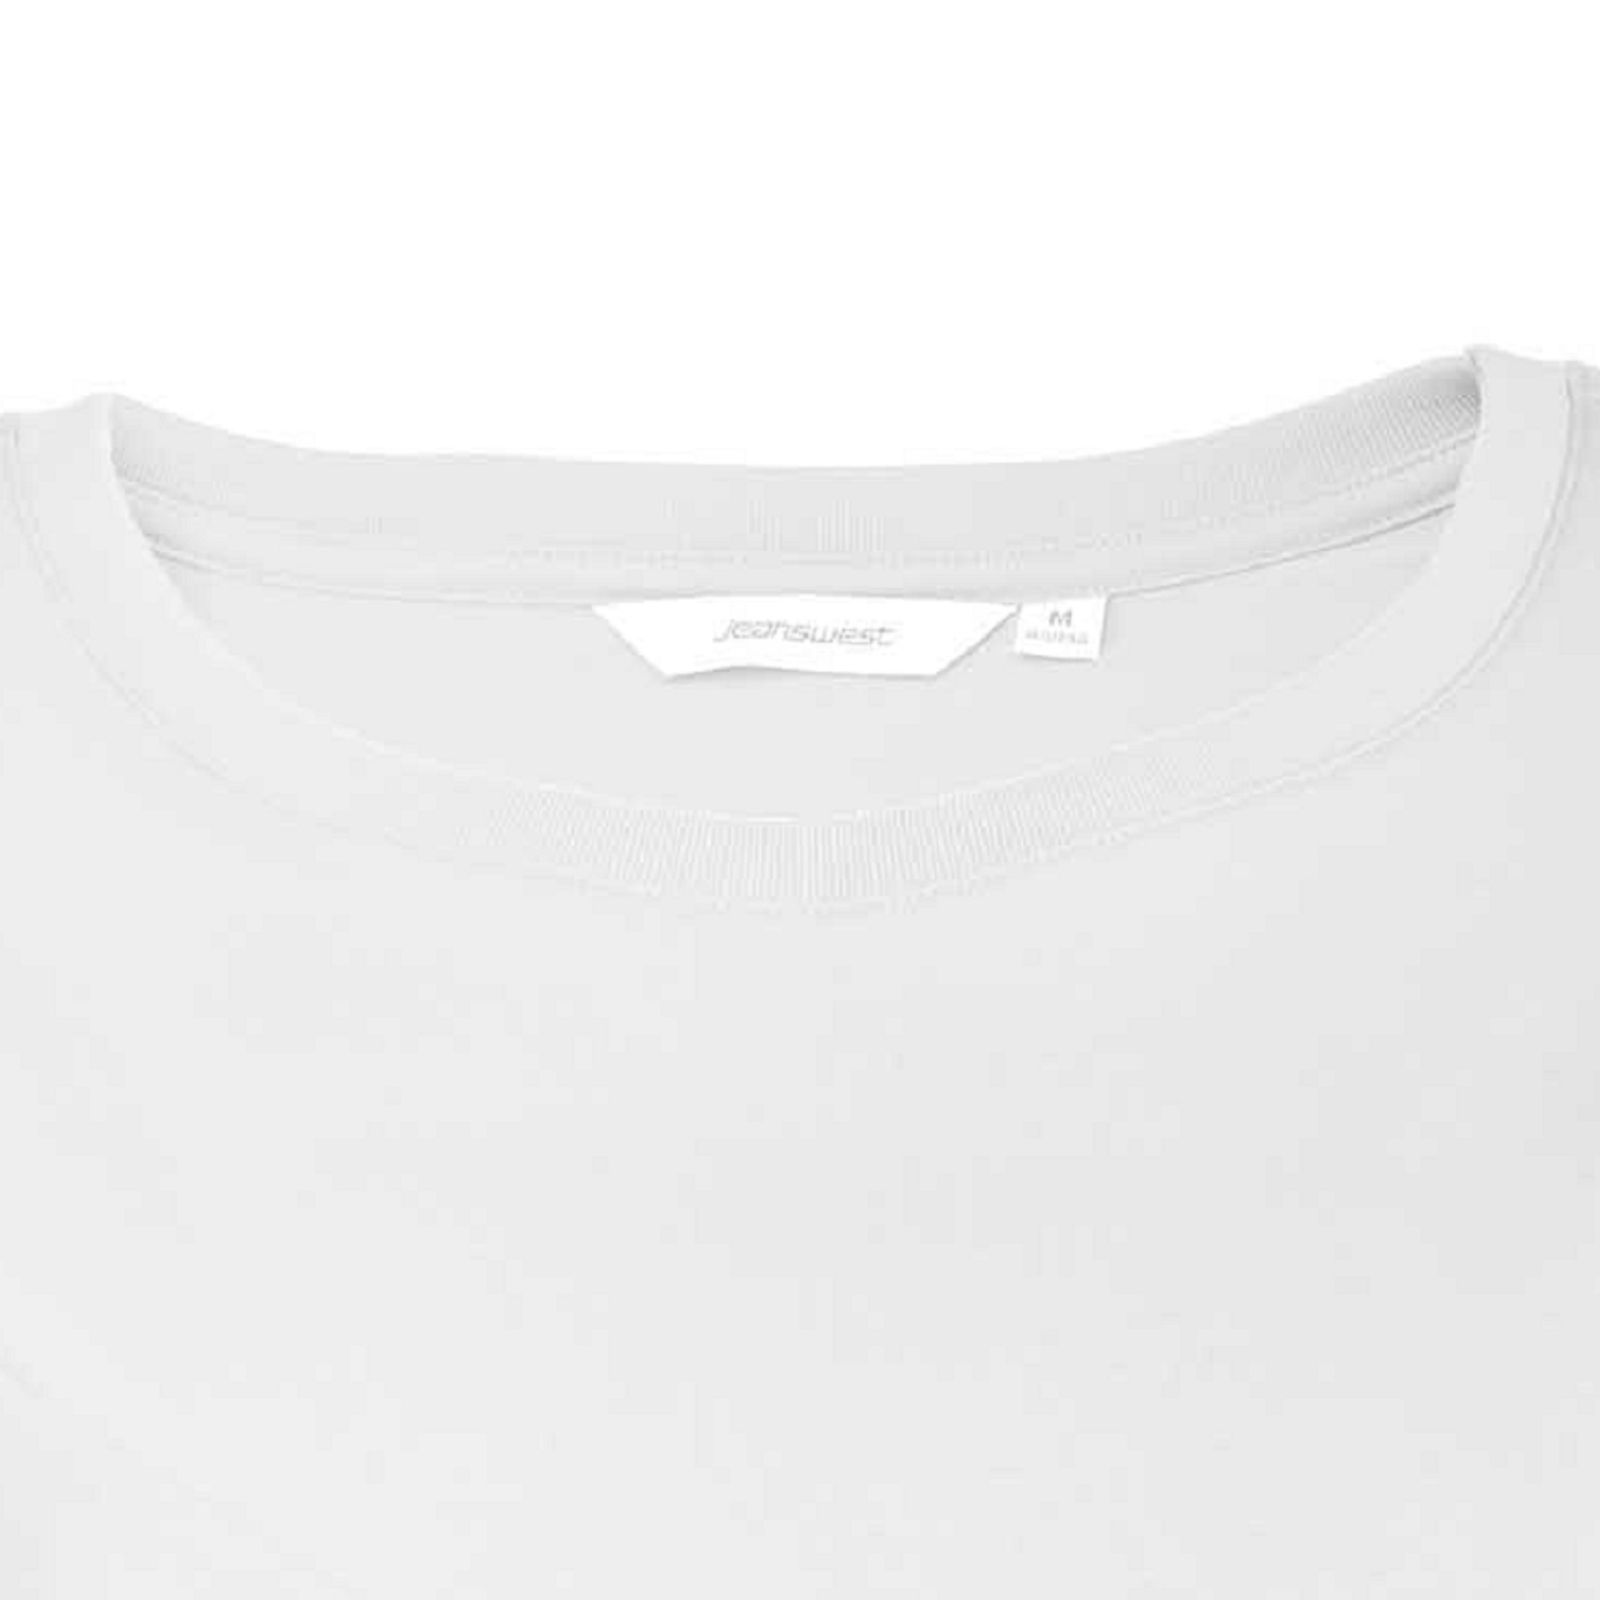 تی شرت آستین کوتاه زنانه جین وست مدل یقه گرد کد 1551351 رنگ سفید -  - 4